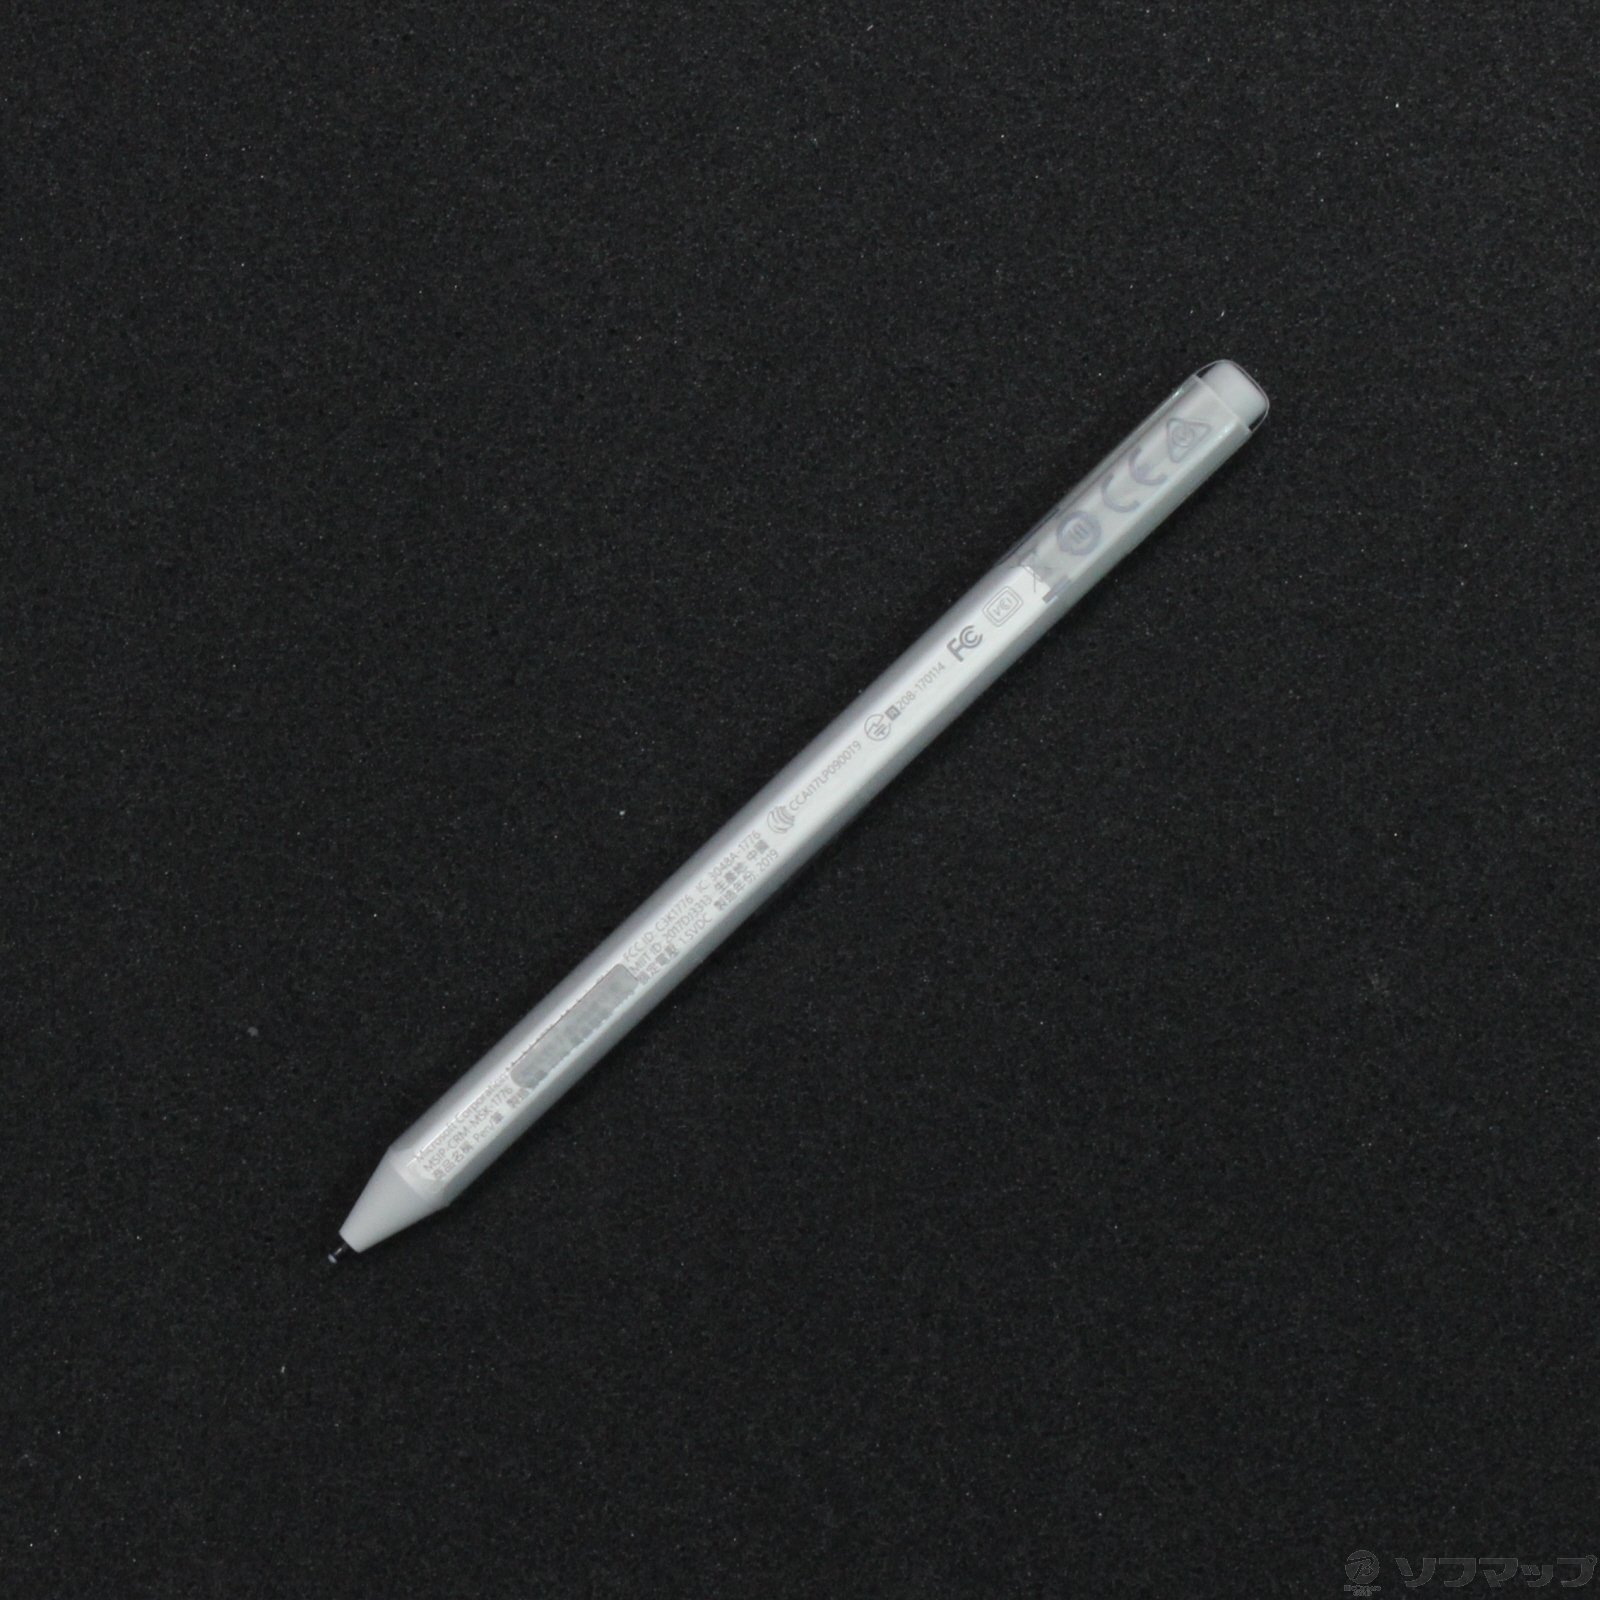 (中古)Microsoft Surface Pen EYV-00015 シルバー(258-ud)